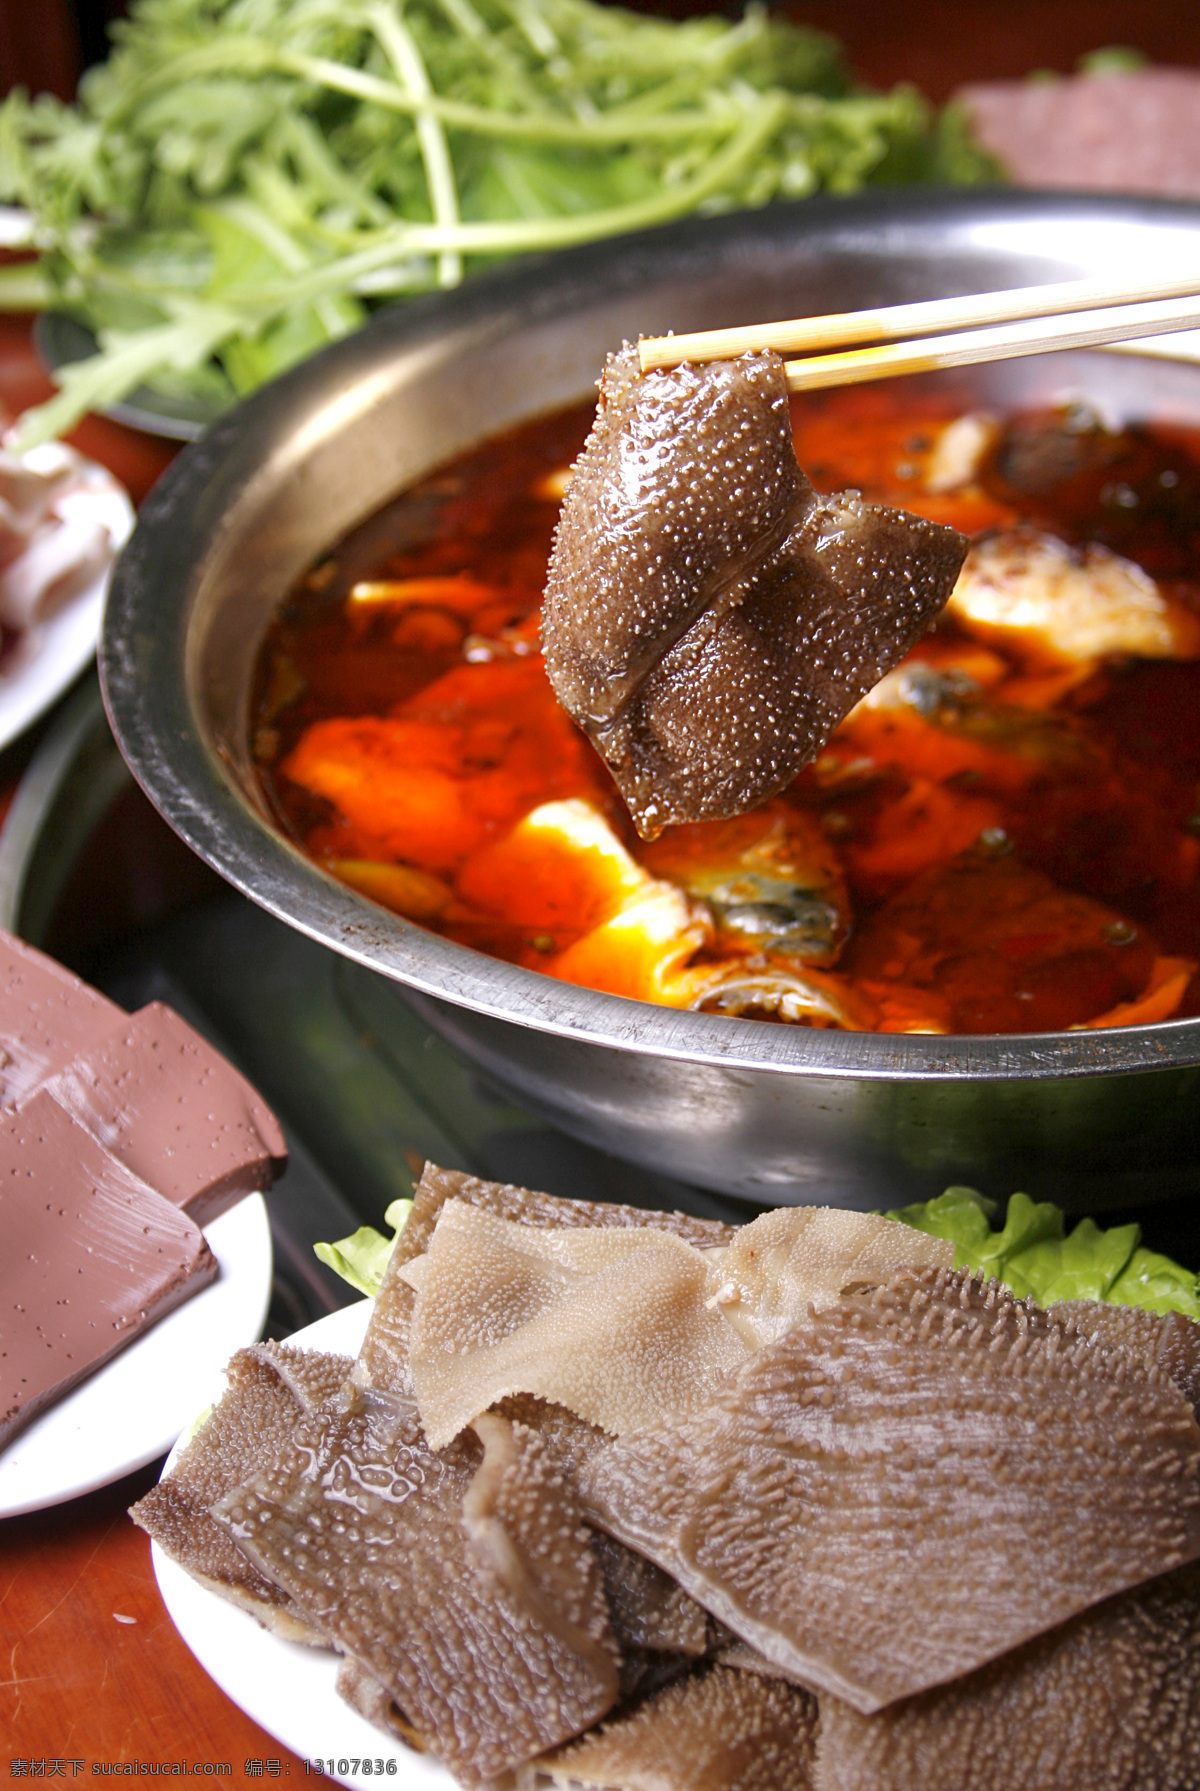 涮毛肚 水煮鱼 血块 青菜 川菜 美味 传统美食 餐饮美食